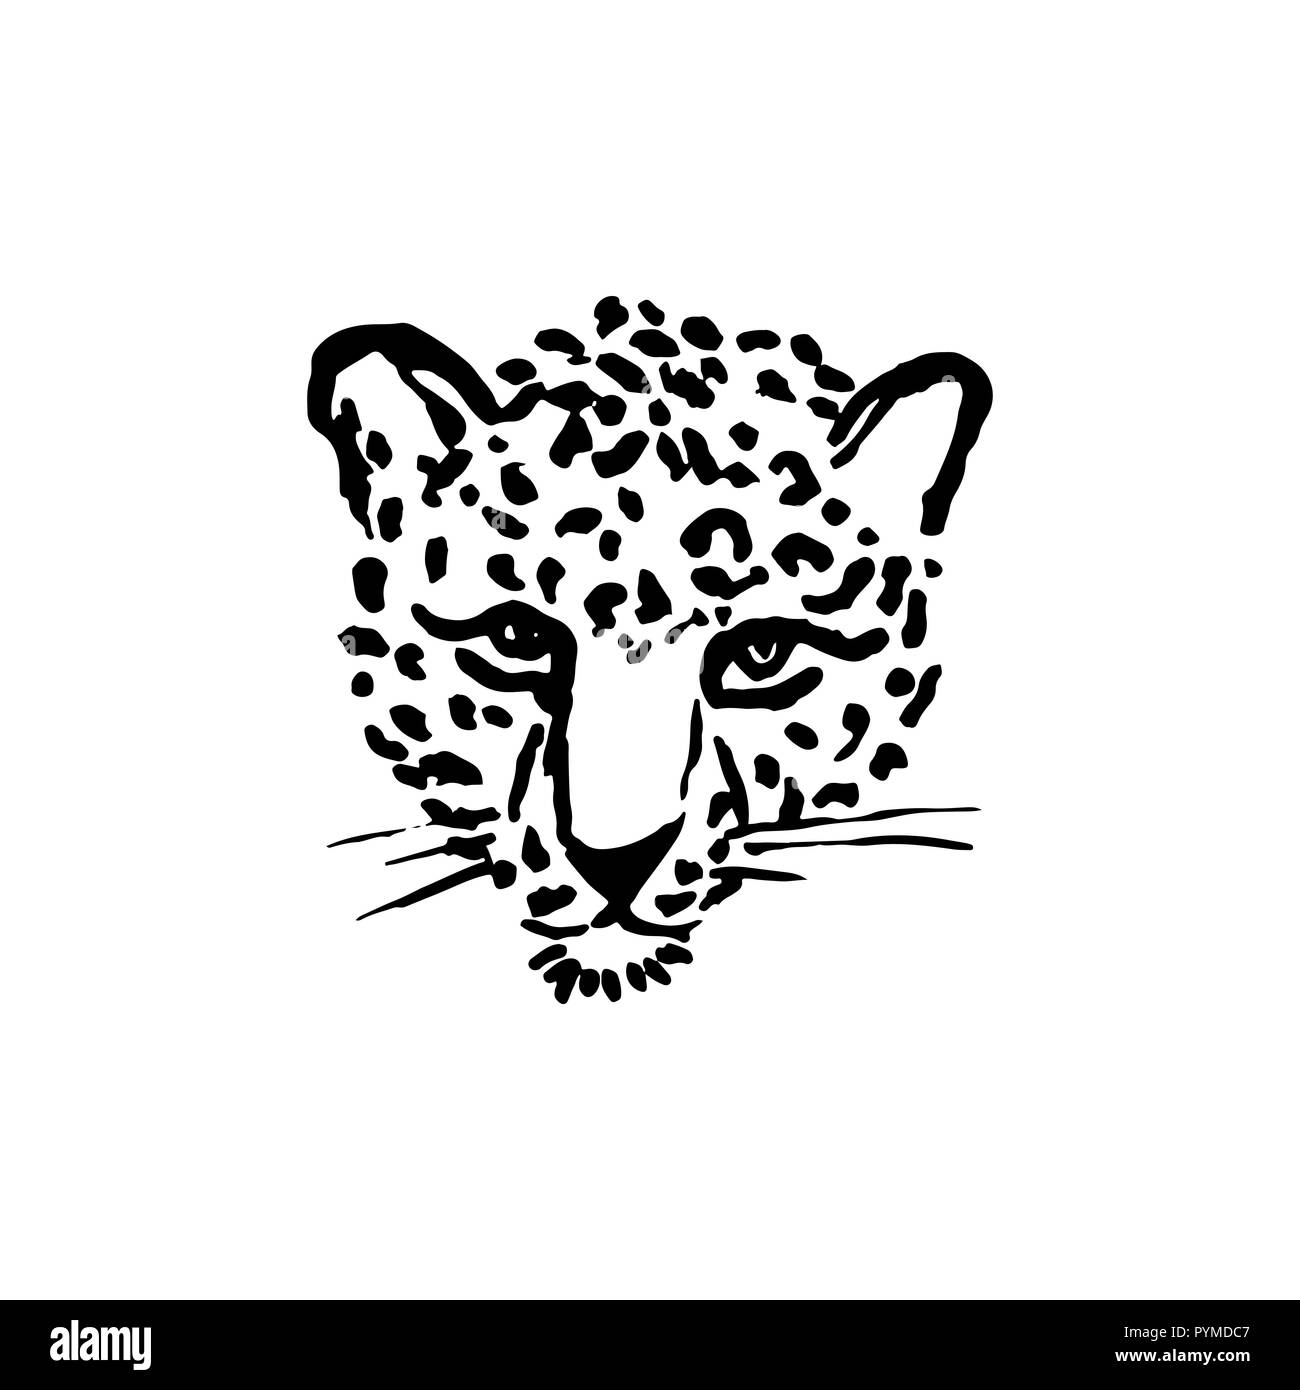 Leopard face vector illustration print Banque d'images noir et blanc - Alamy